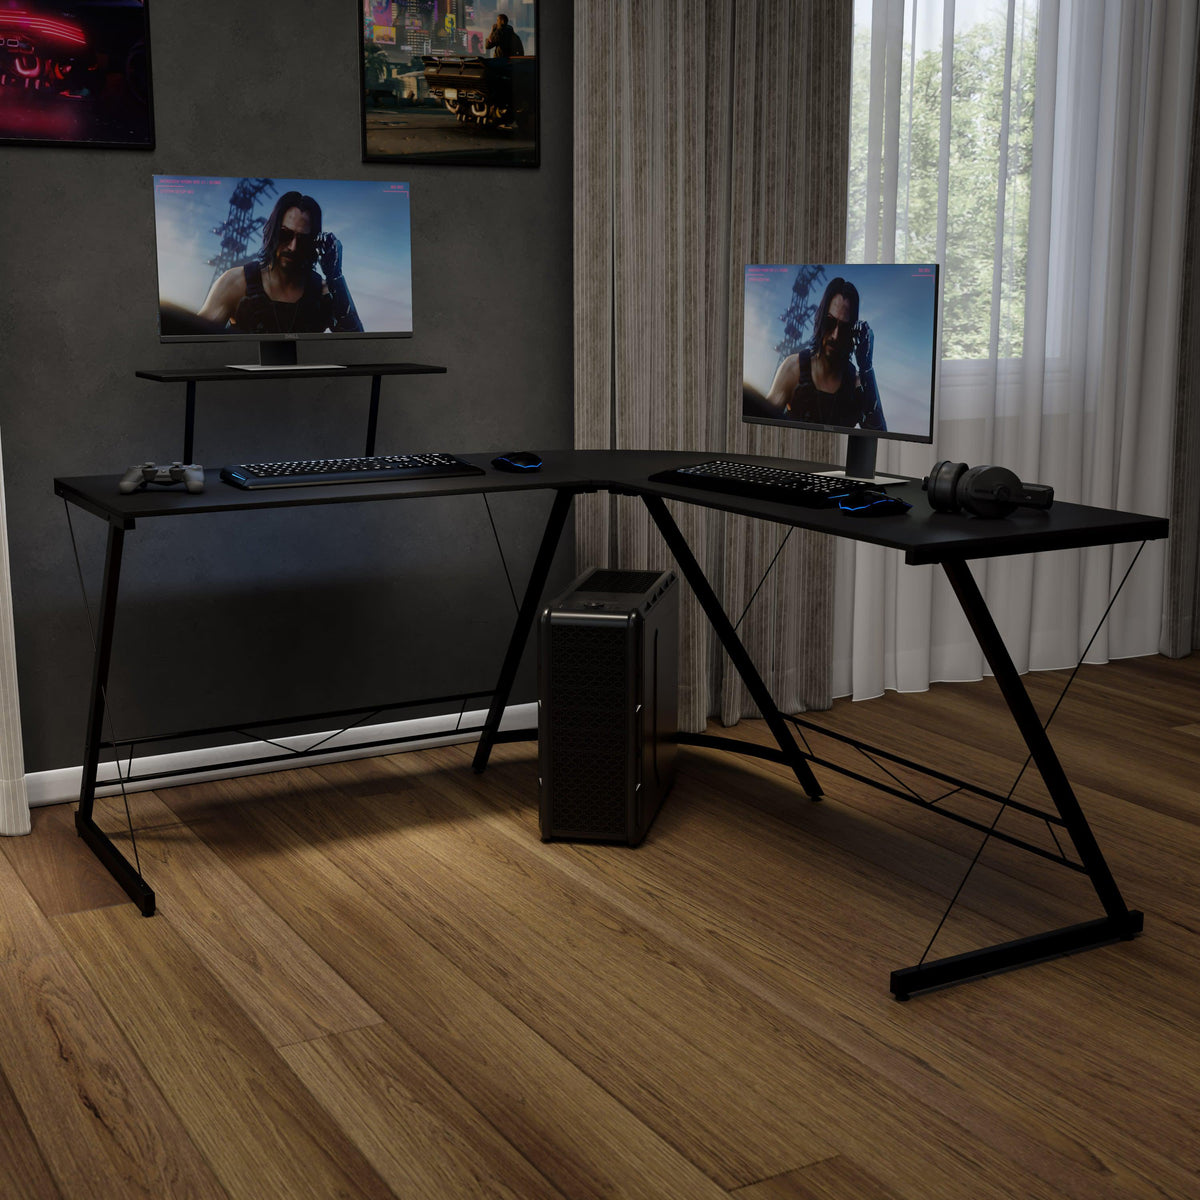 Black Top/Black Frame |#| L-Shaped Computer Black Desk, Gaming Desk, Home Office Desk, Black Frame